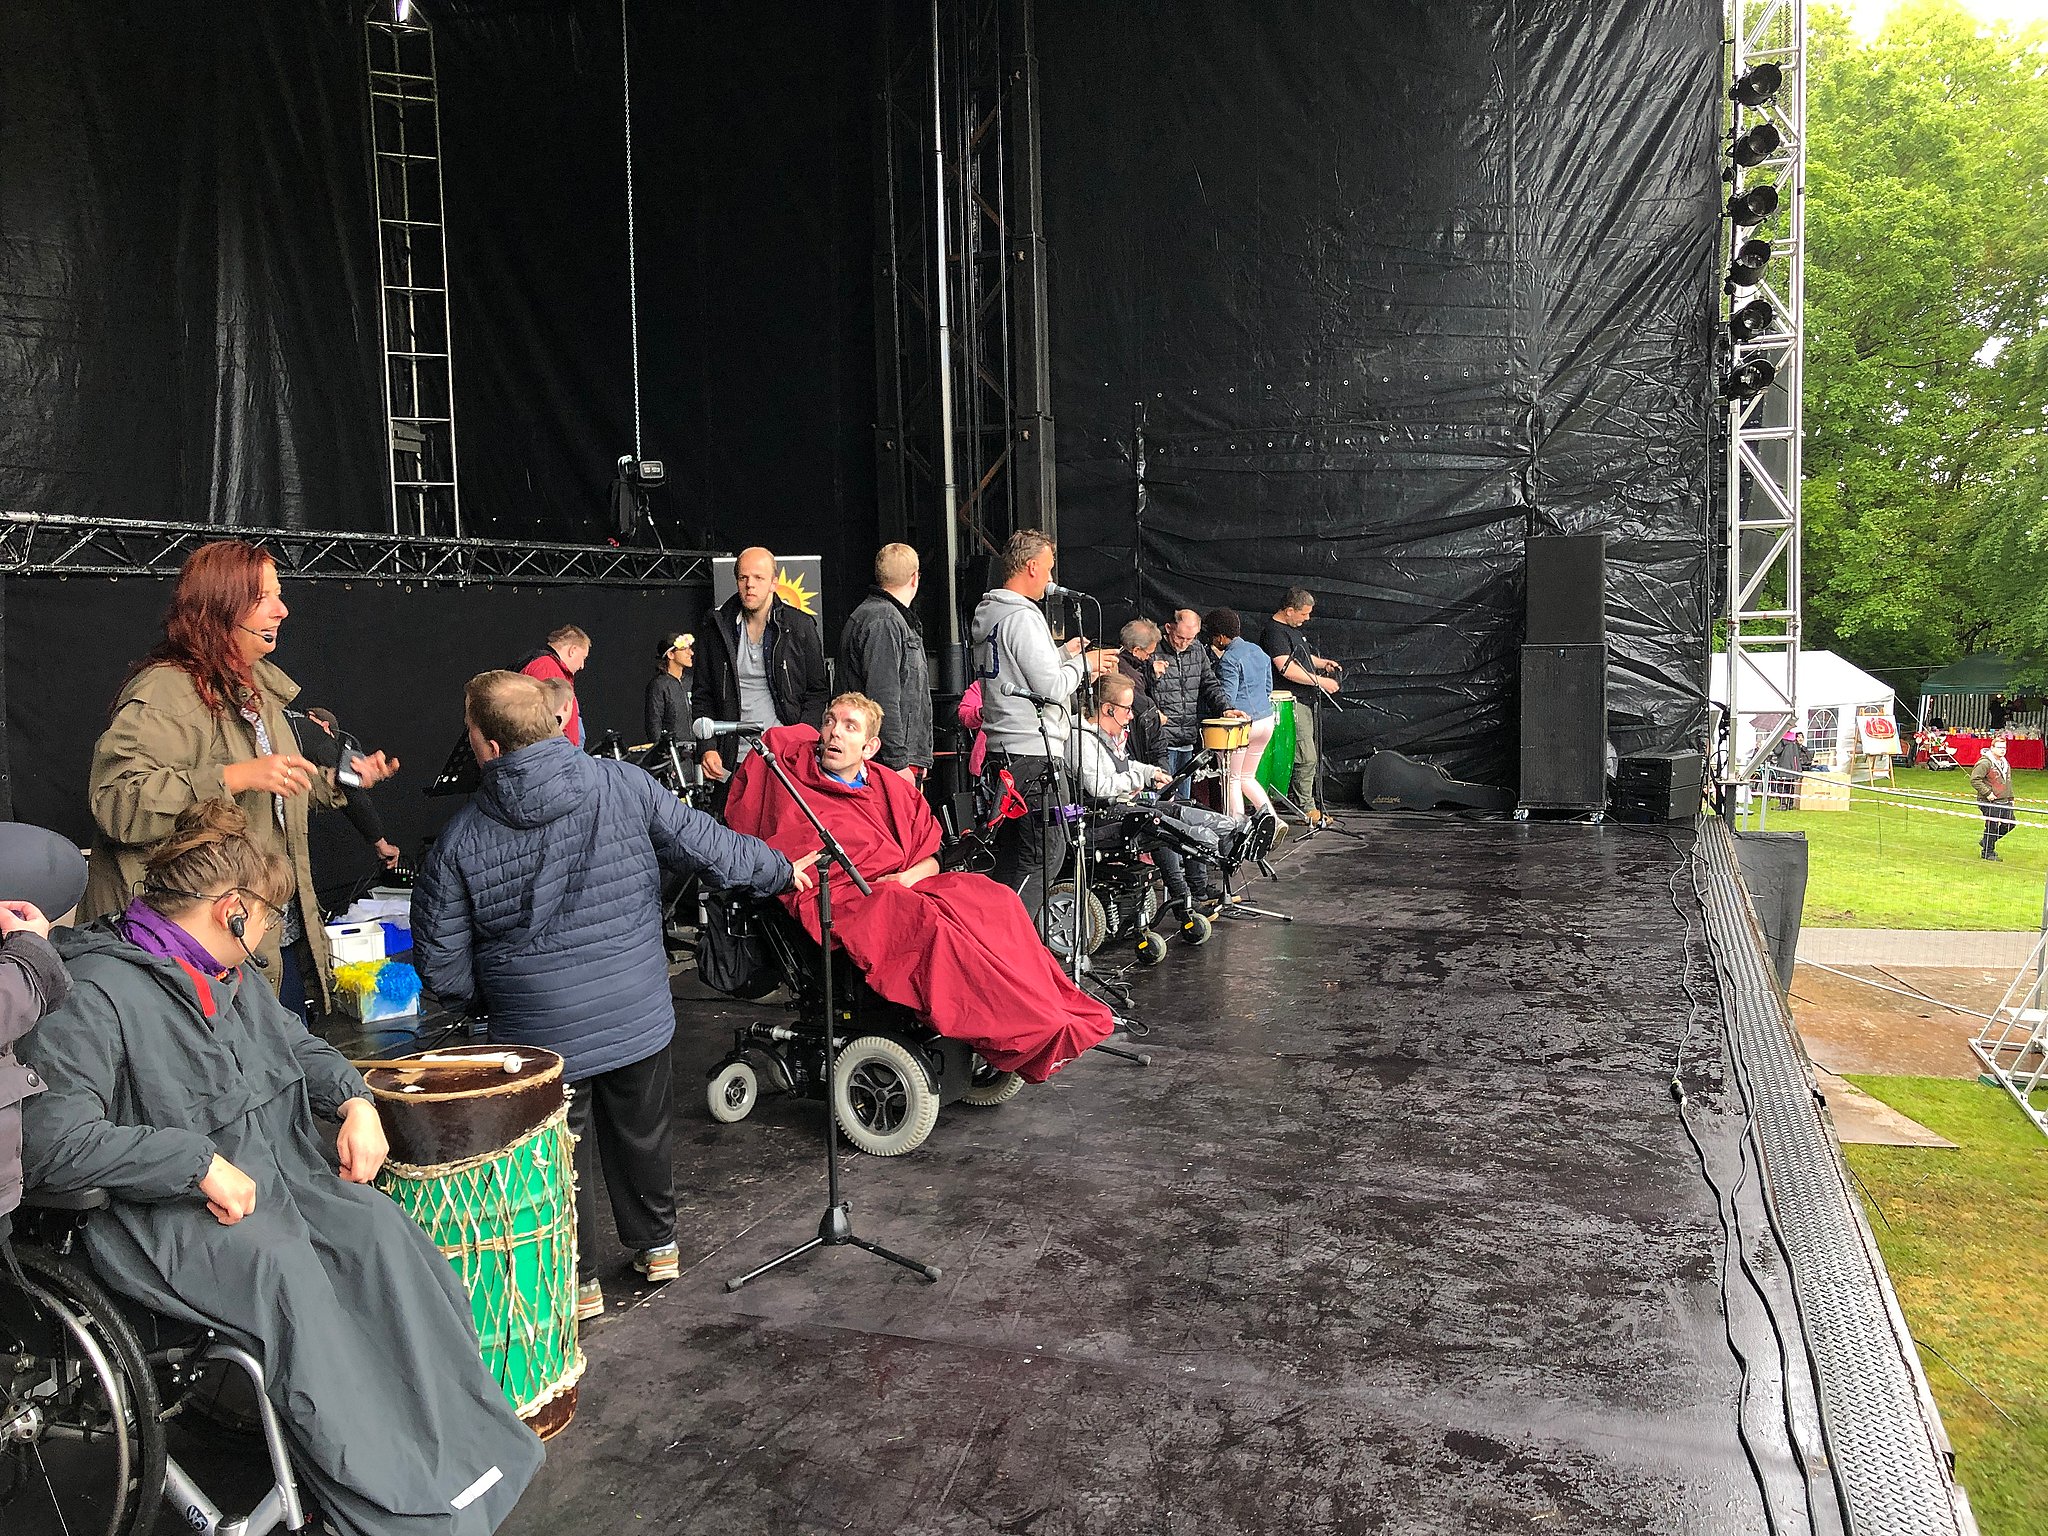 modstå Forge vidne Sjællandsfestivalen er i gang: Flere tusinde mennesker med handicap fester  i Slagelse | TV2 ØST